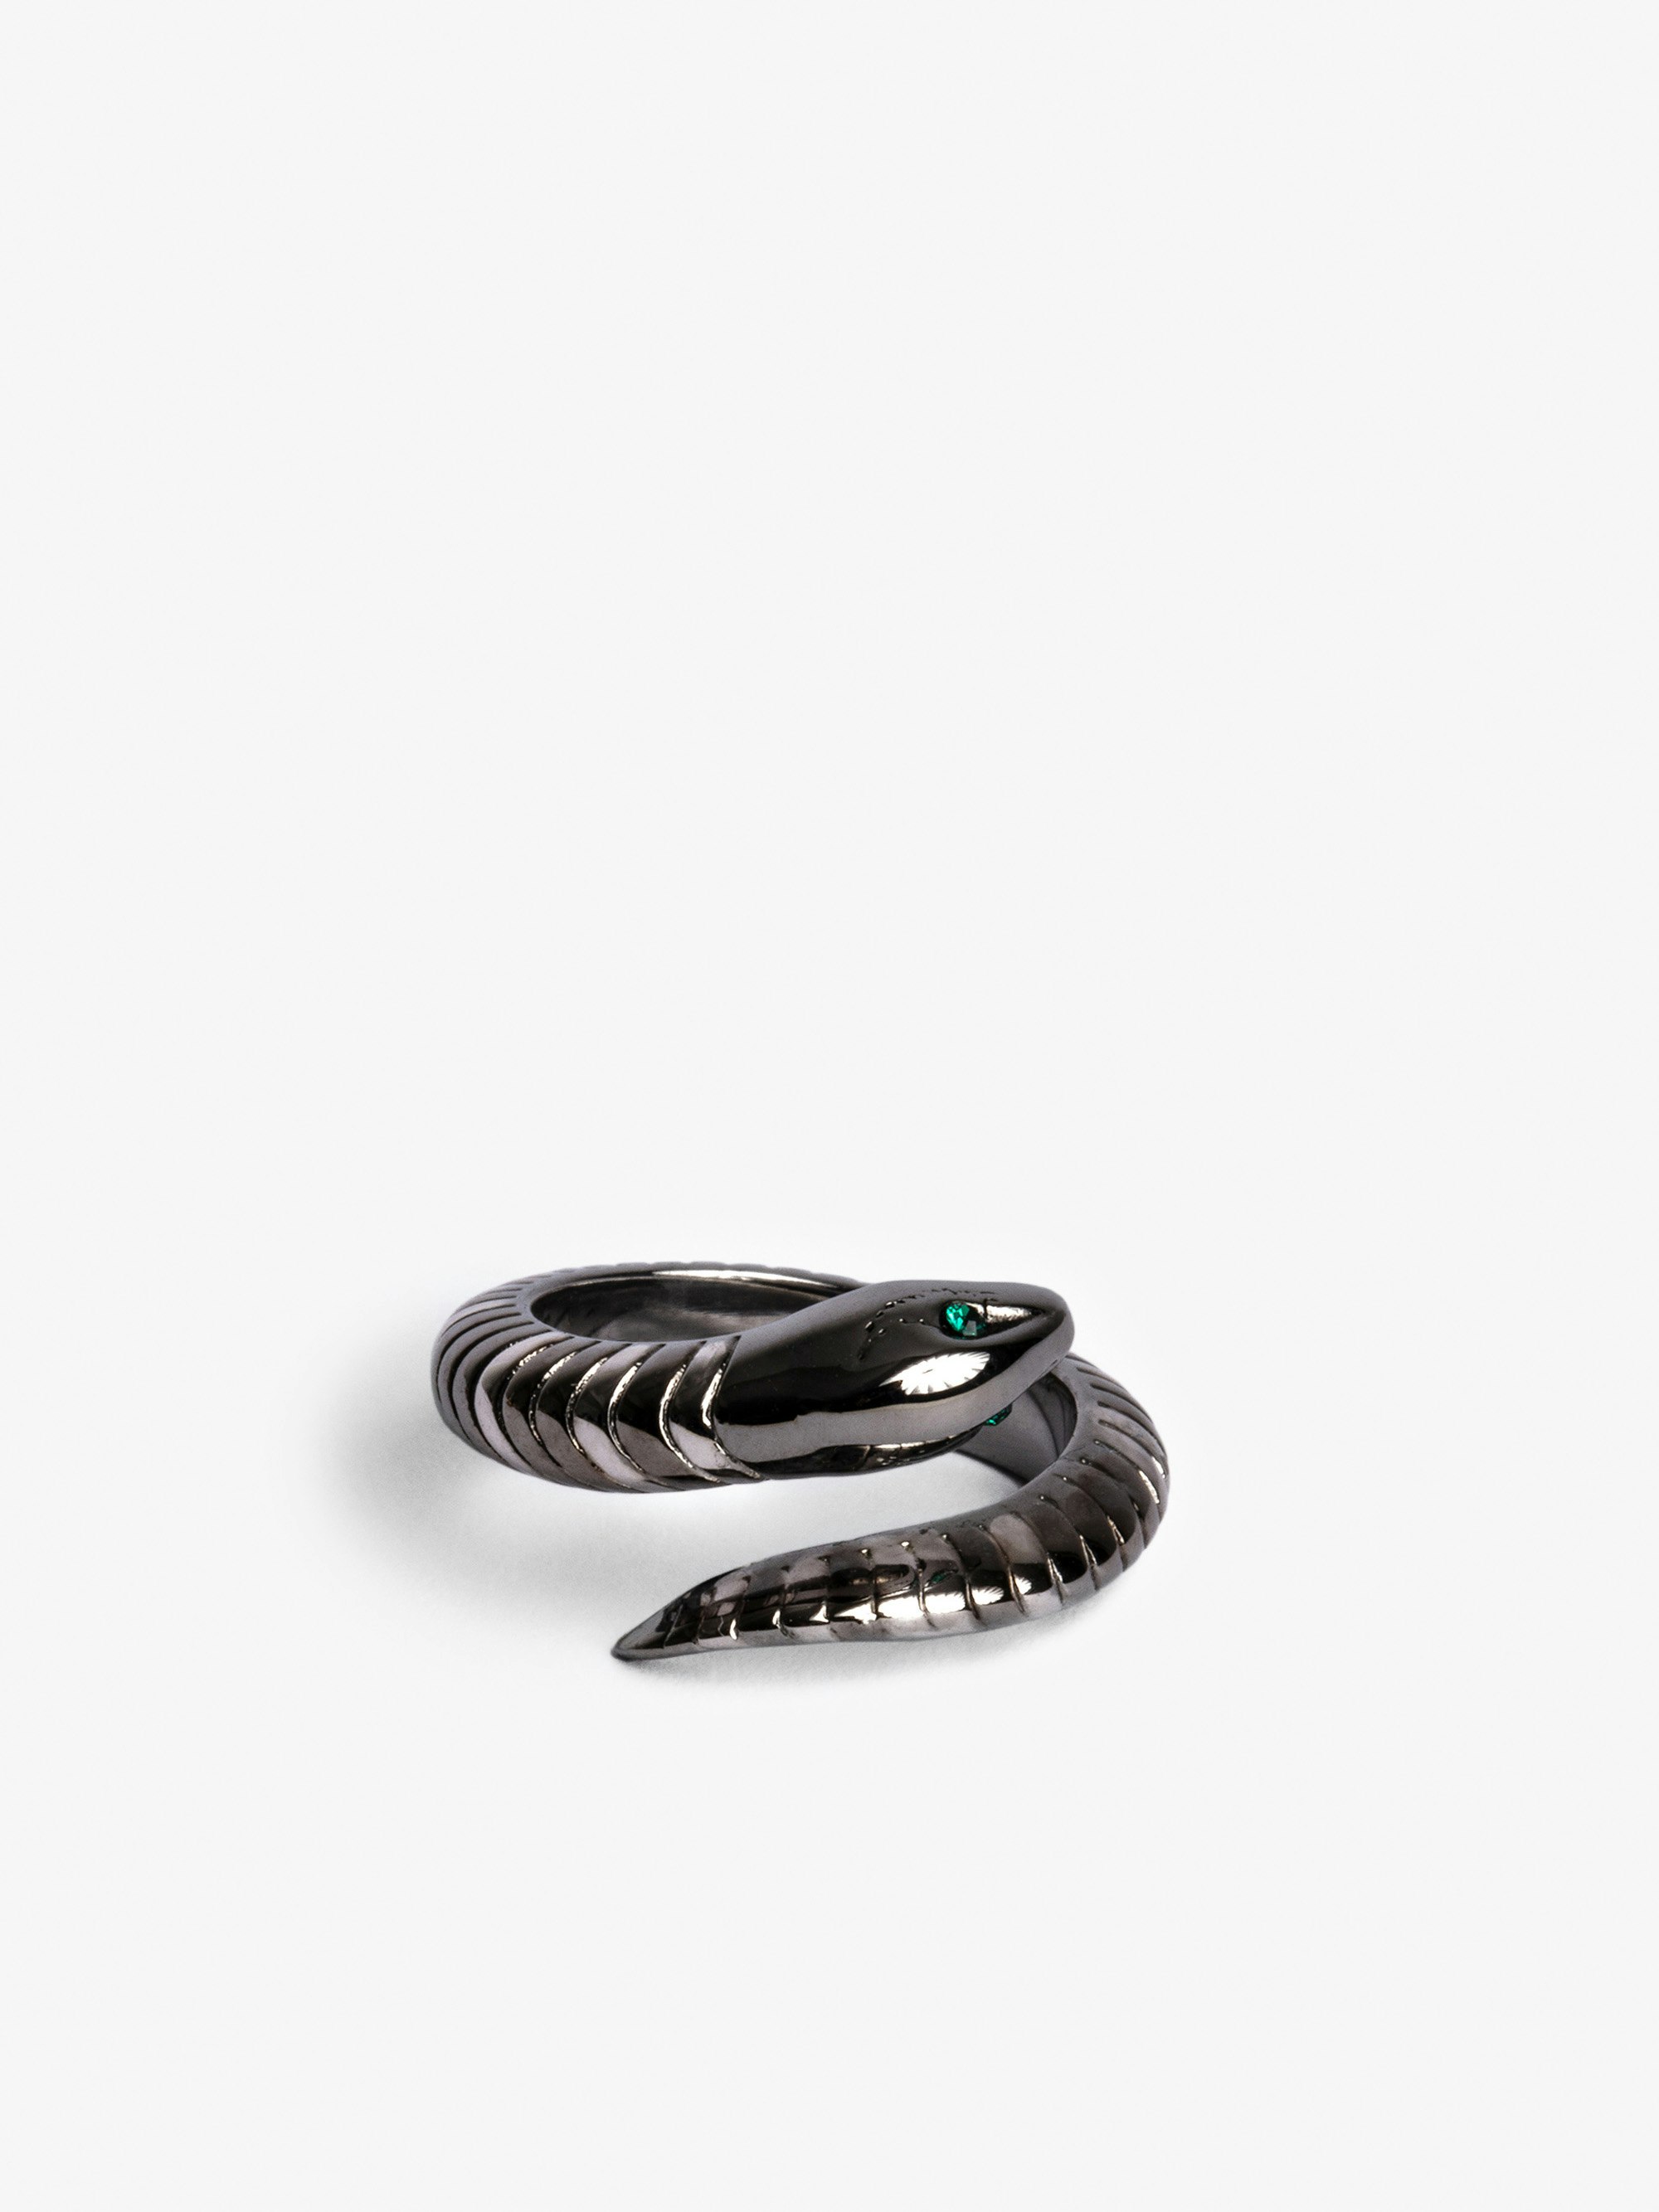 Anello Snake - Bracciale a serpente in ottone argentato.